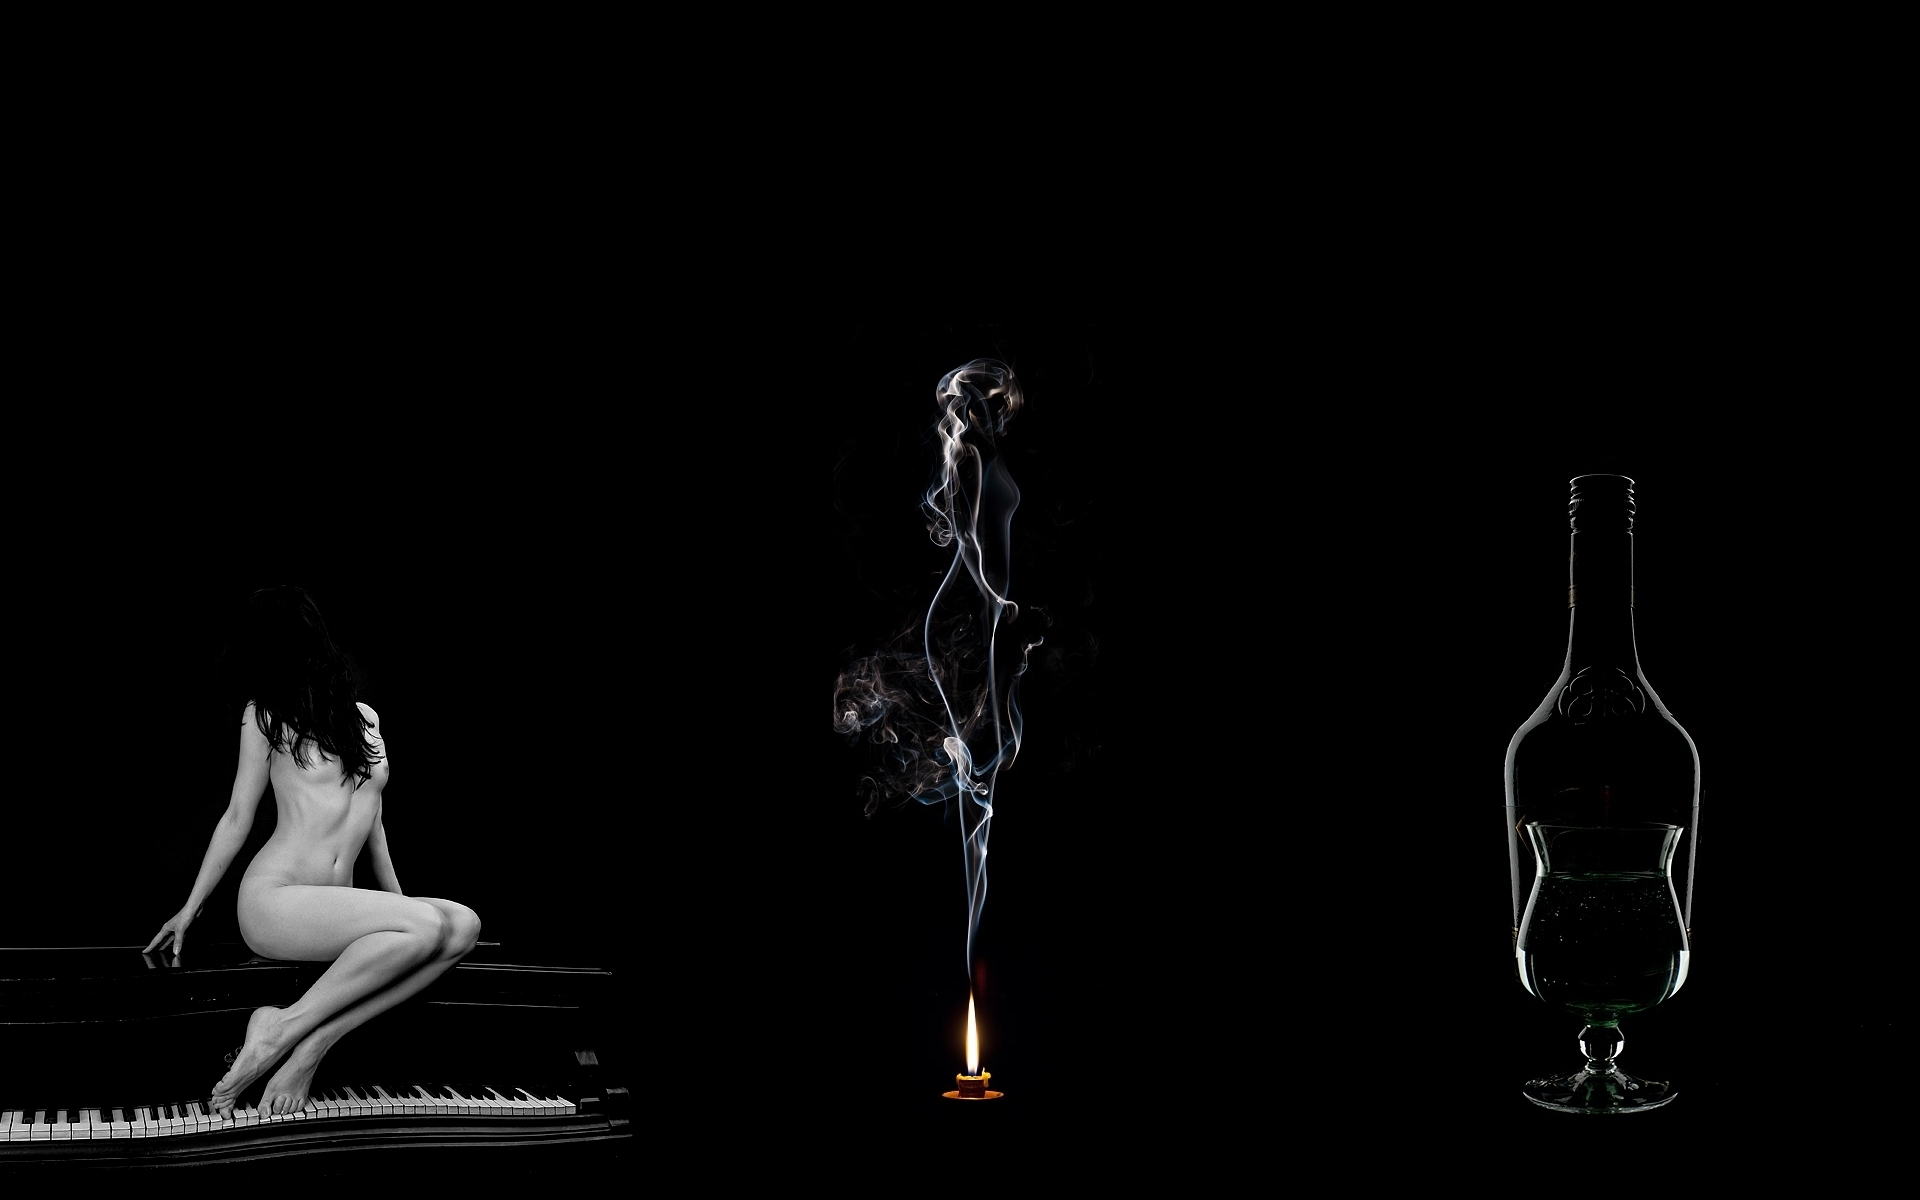 3d обои Голая девушка на пианино, дым от свечи в виде девушки и бокал с бутылкой  огонь # 68111